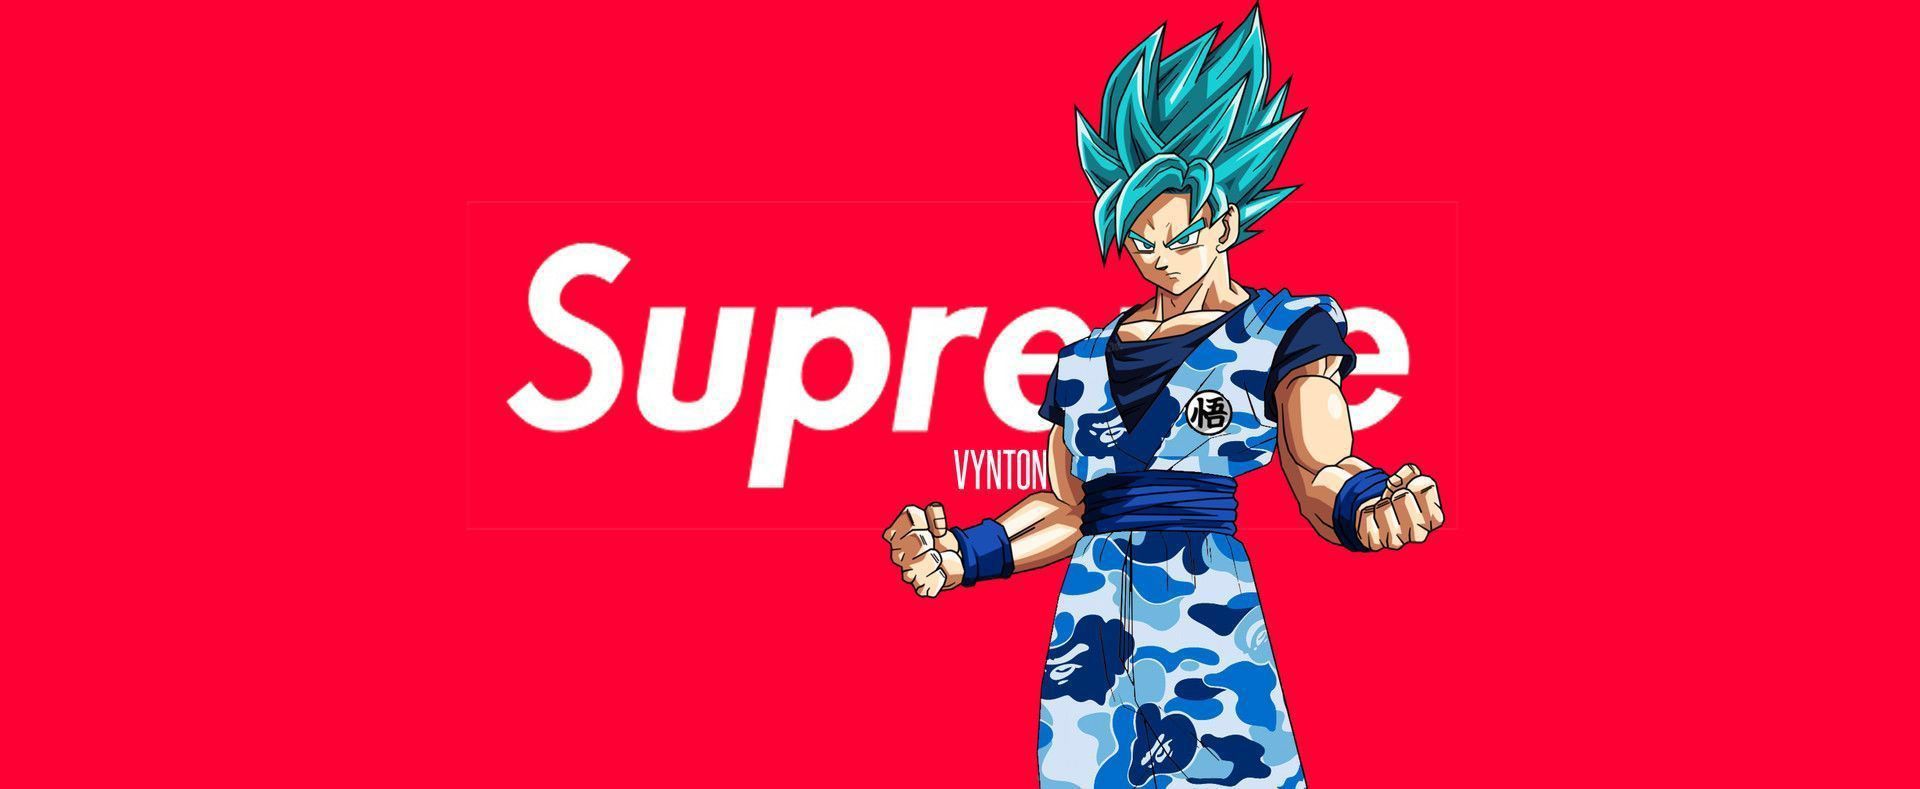 Drip Goku Wallpaper, Bape, Supreme. Goku wallpaper, Supreme wallpaper, Desktop wallpaper